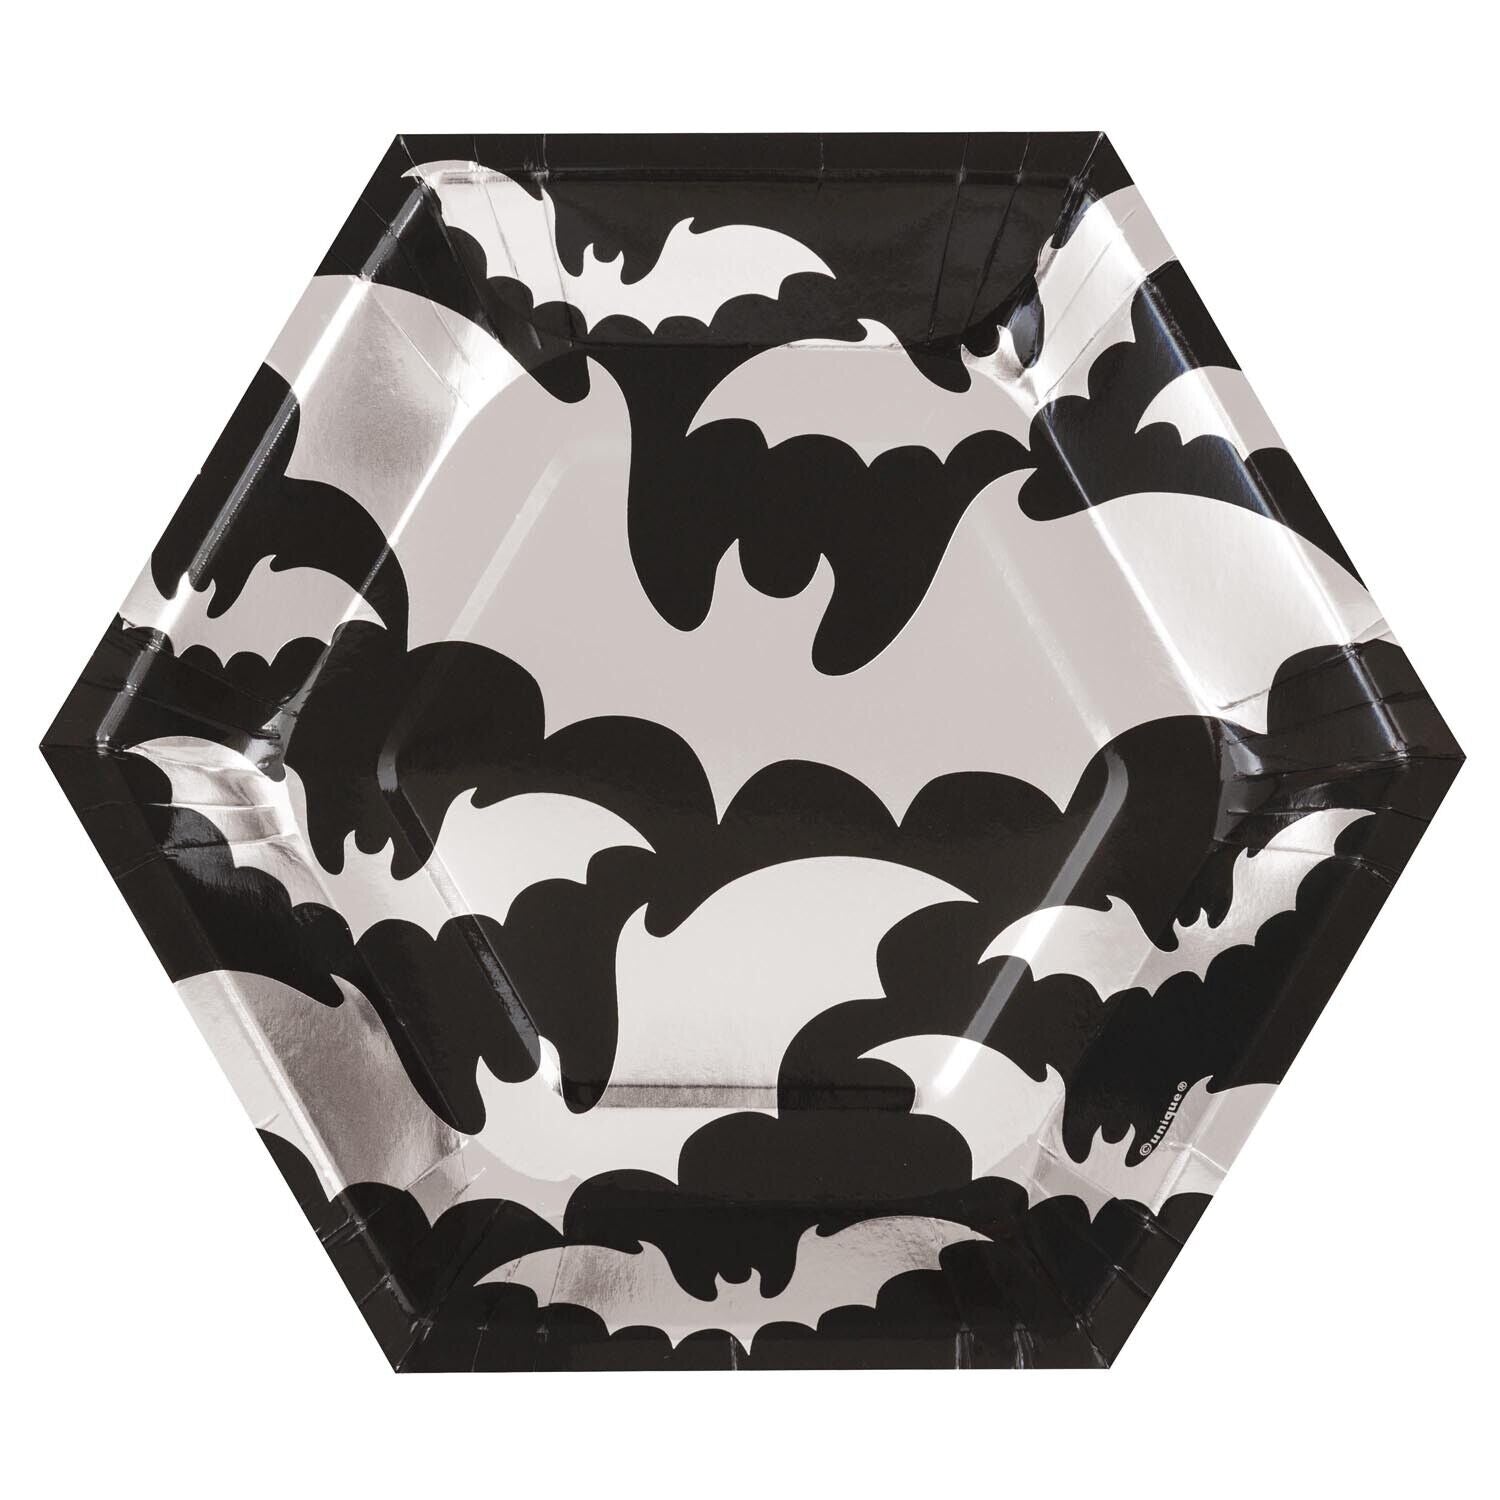 Halloween Silver Bats Hexagonal Plates 21cm